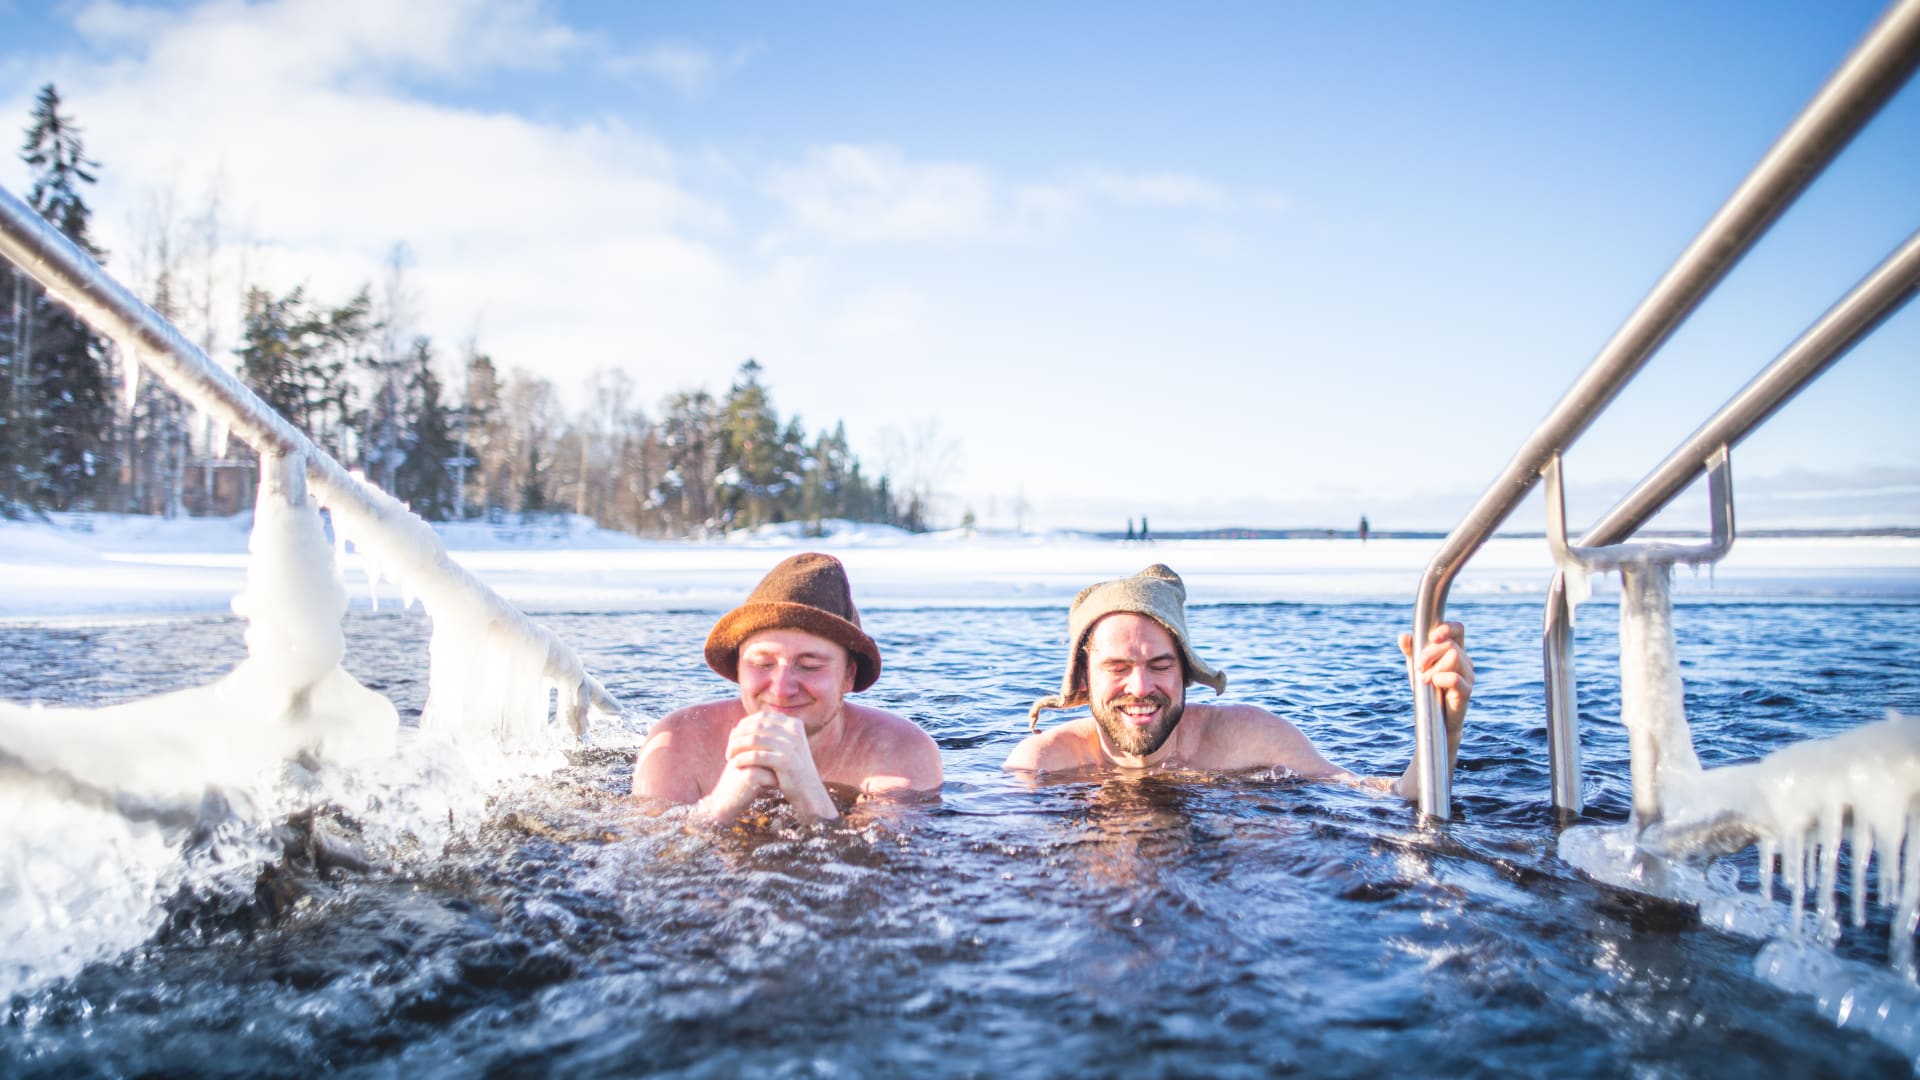 Matti and Juha winter swimming in Rauhaniemi